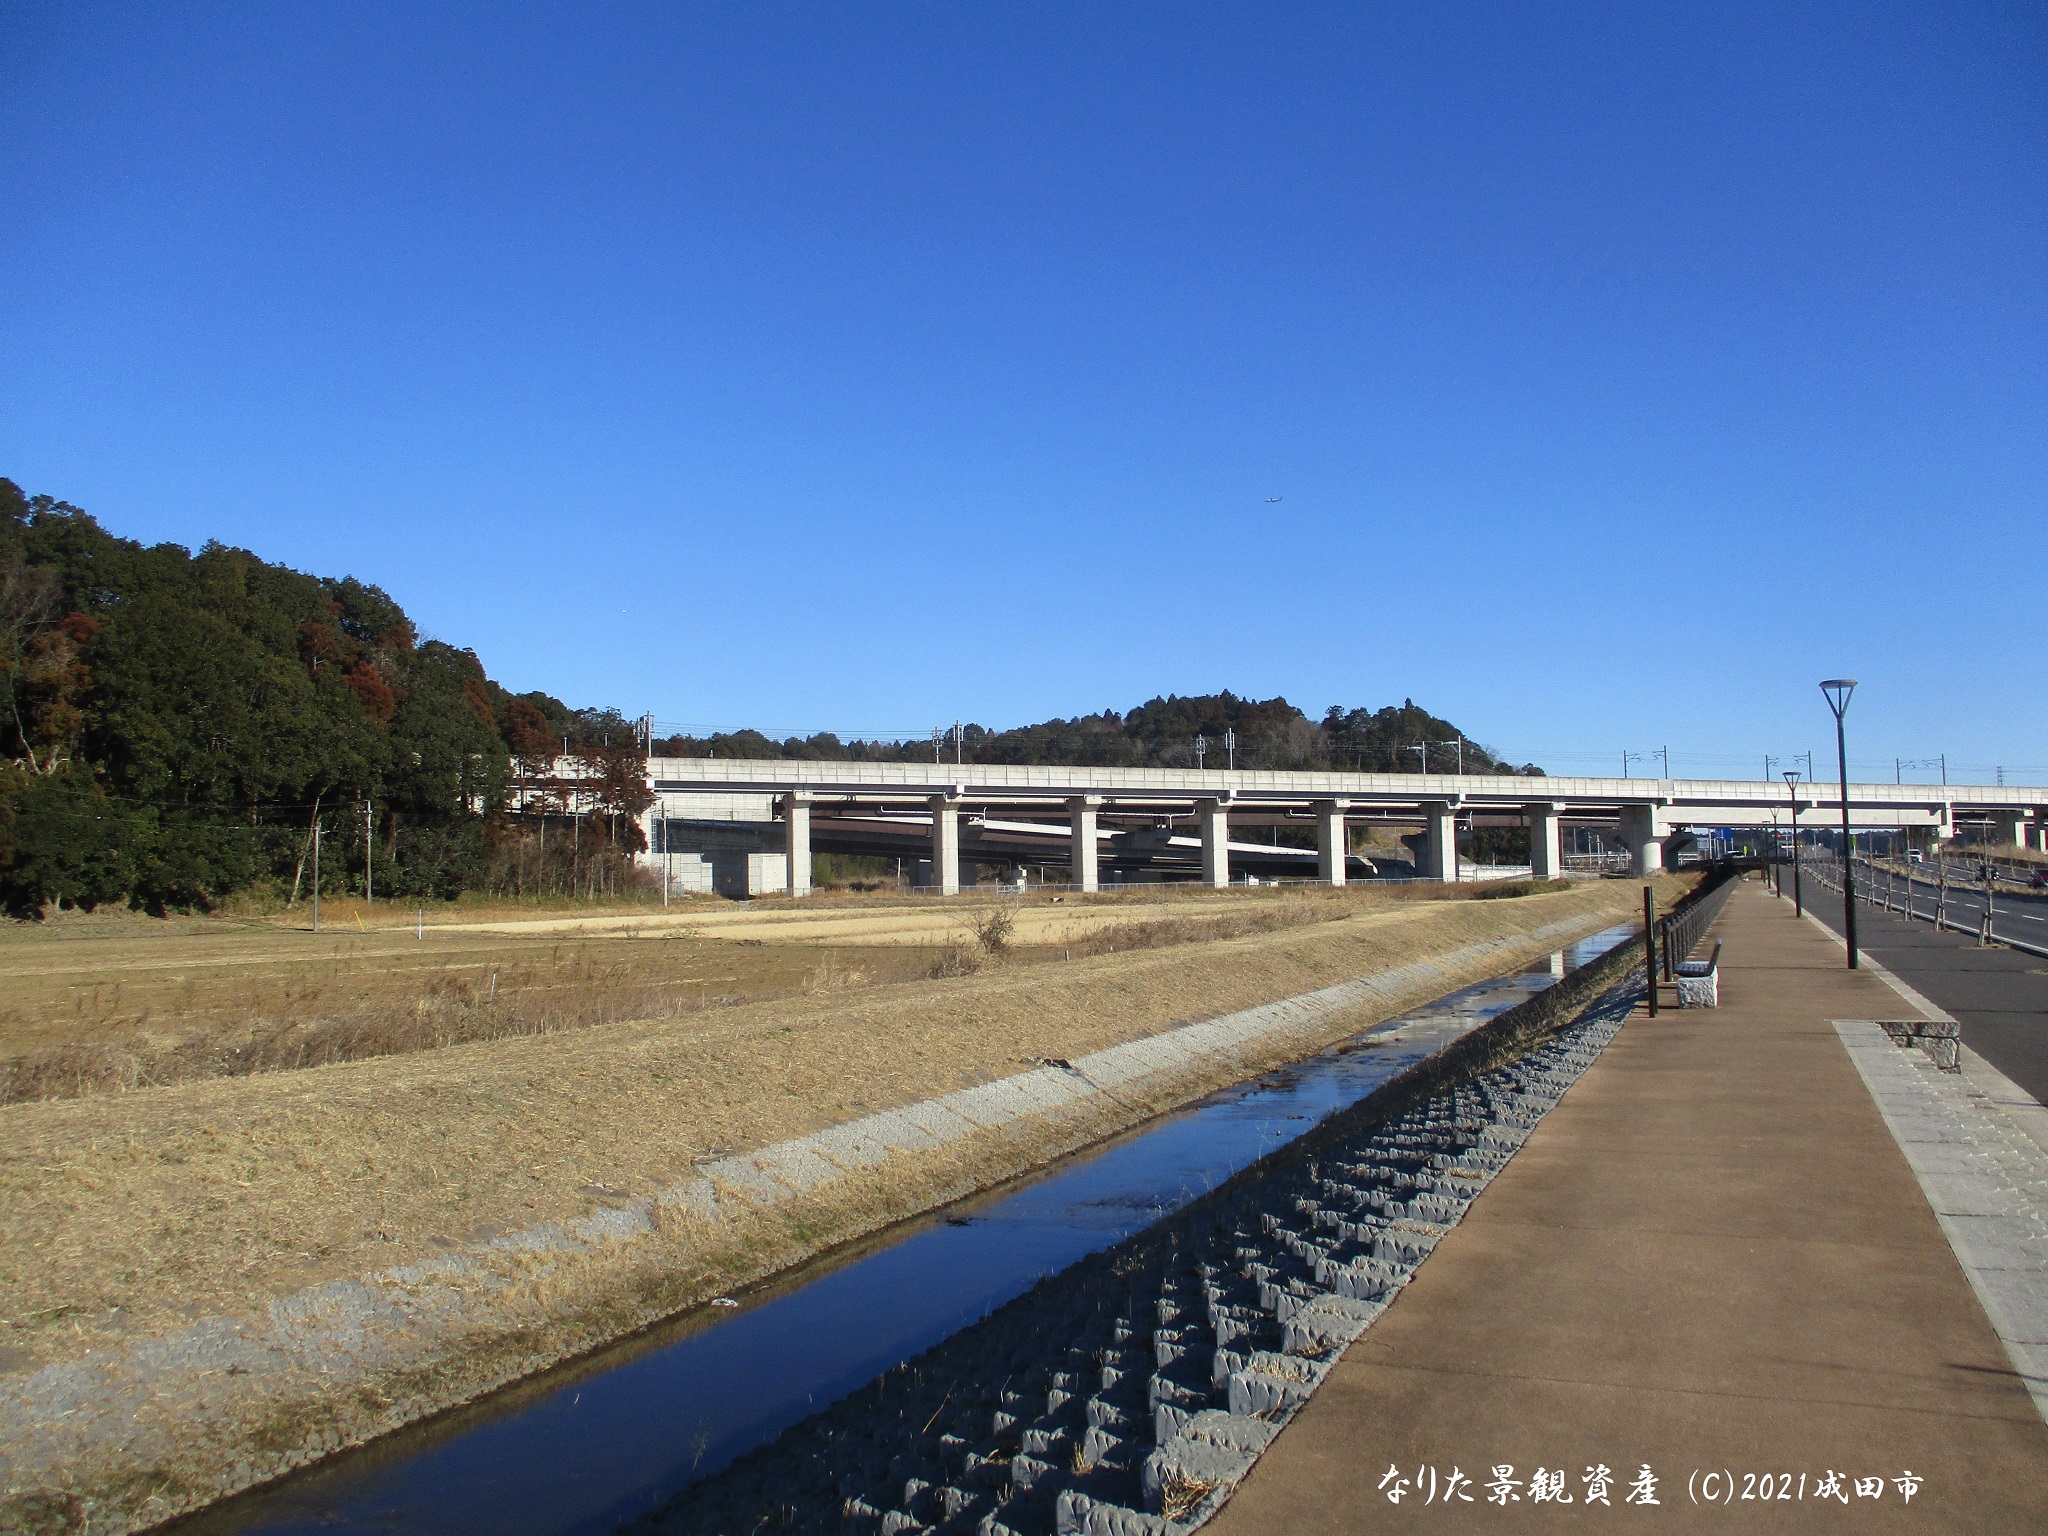 松崎川遊歩道から望む自然の景観写真1